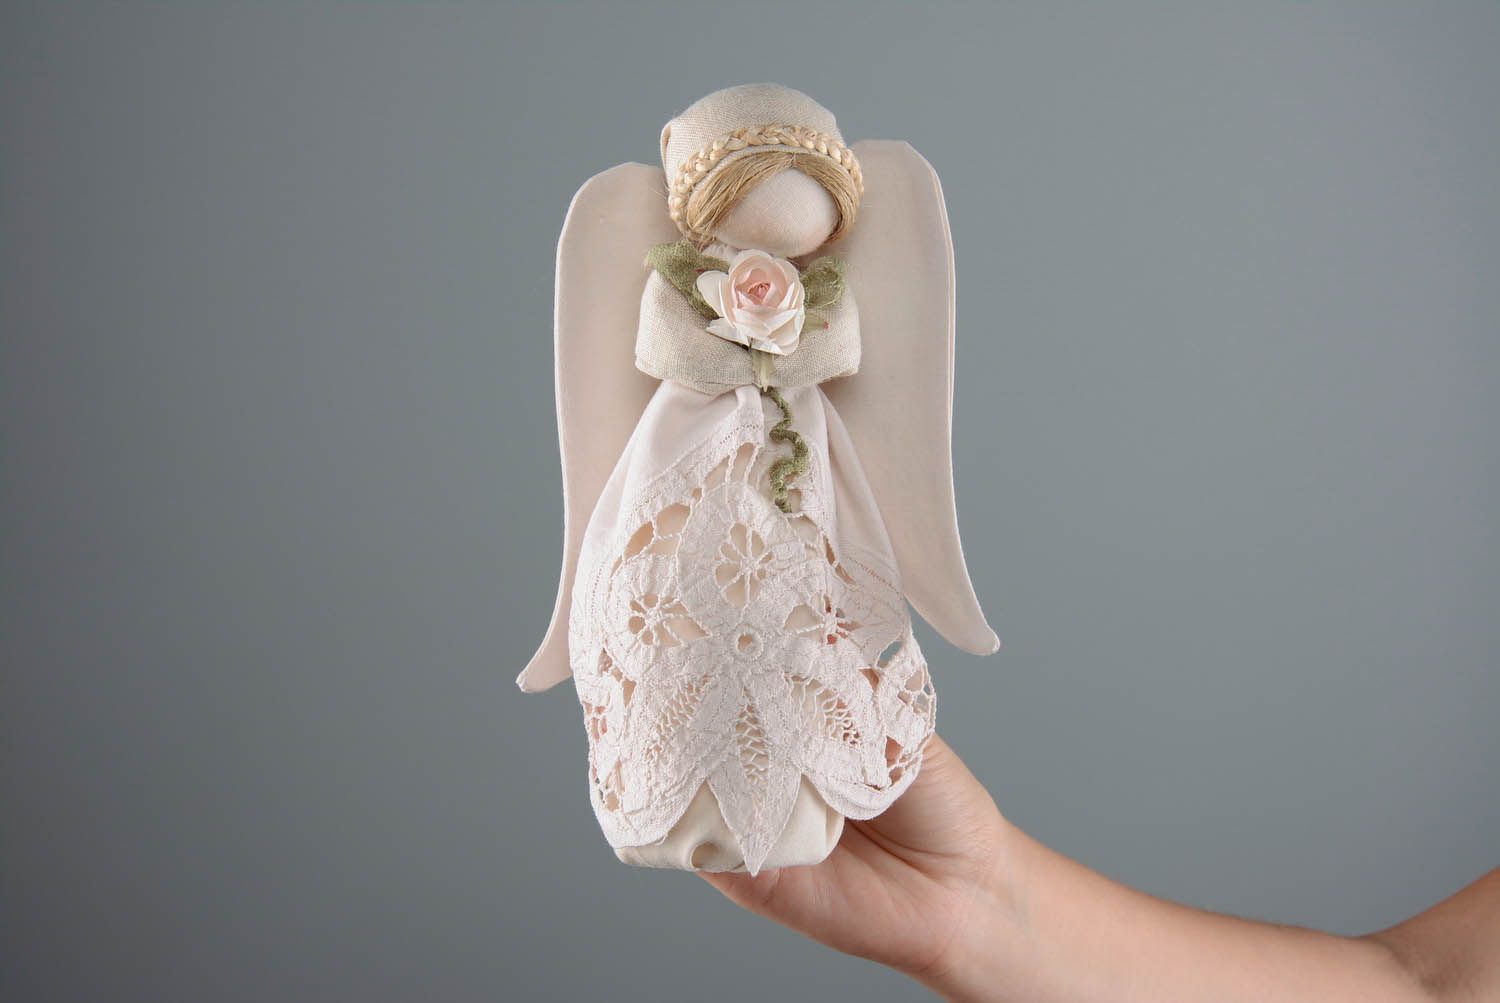 Интерьерная кукла Ангел-Хранитель фото 2